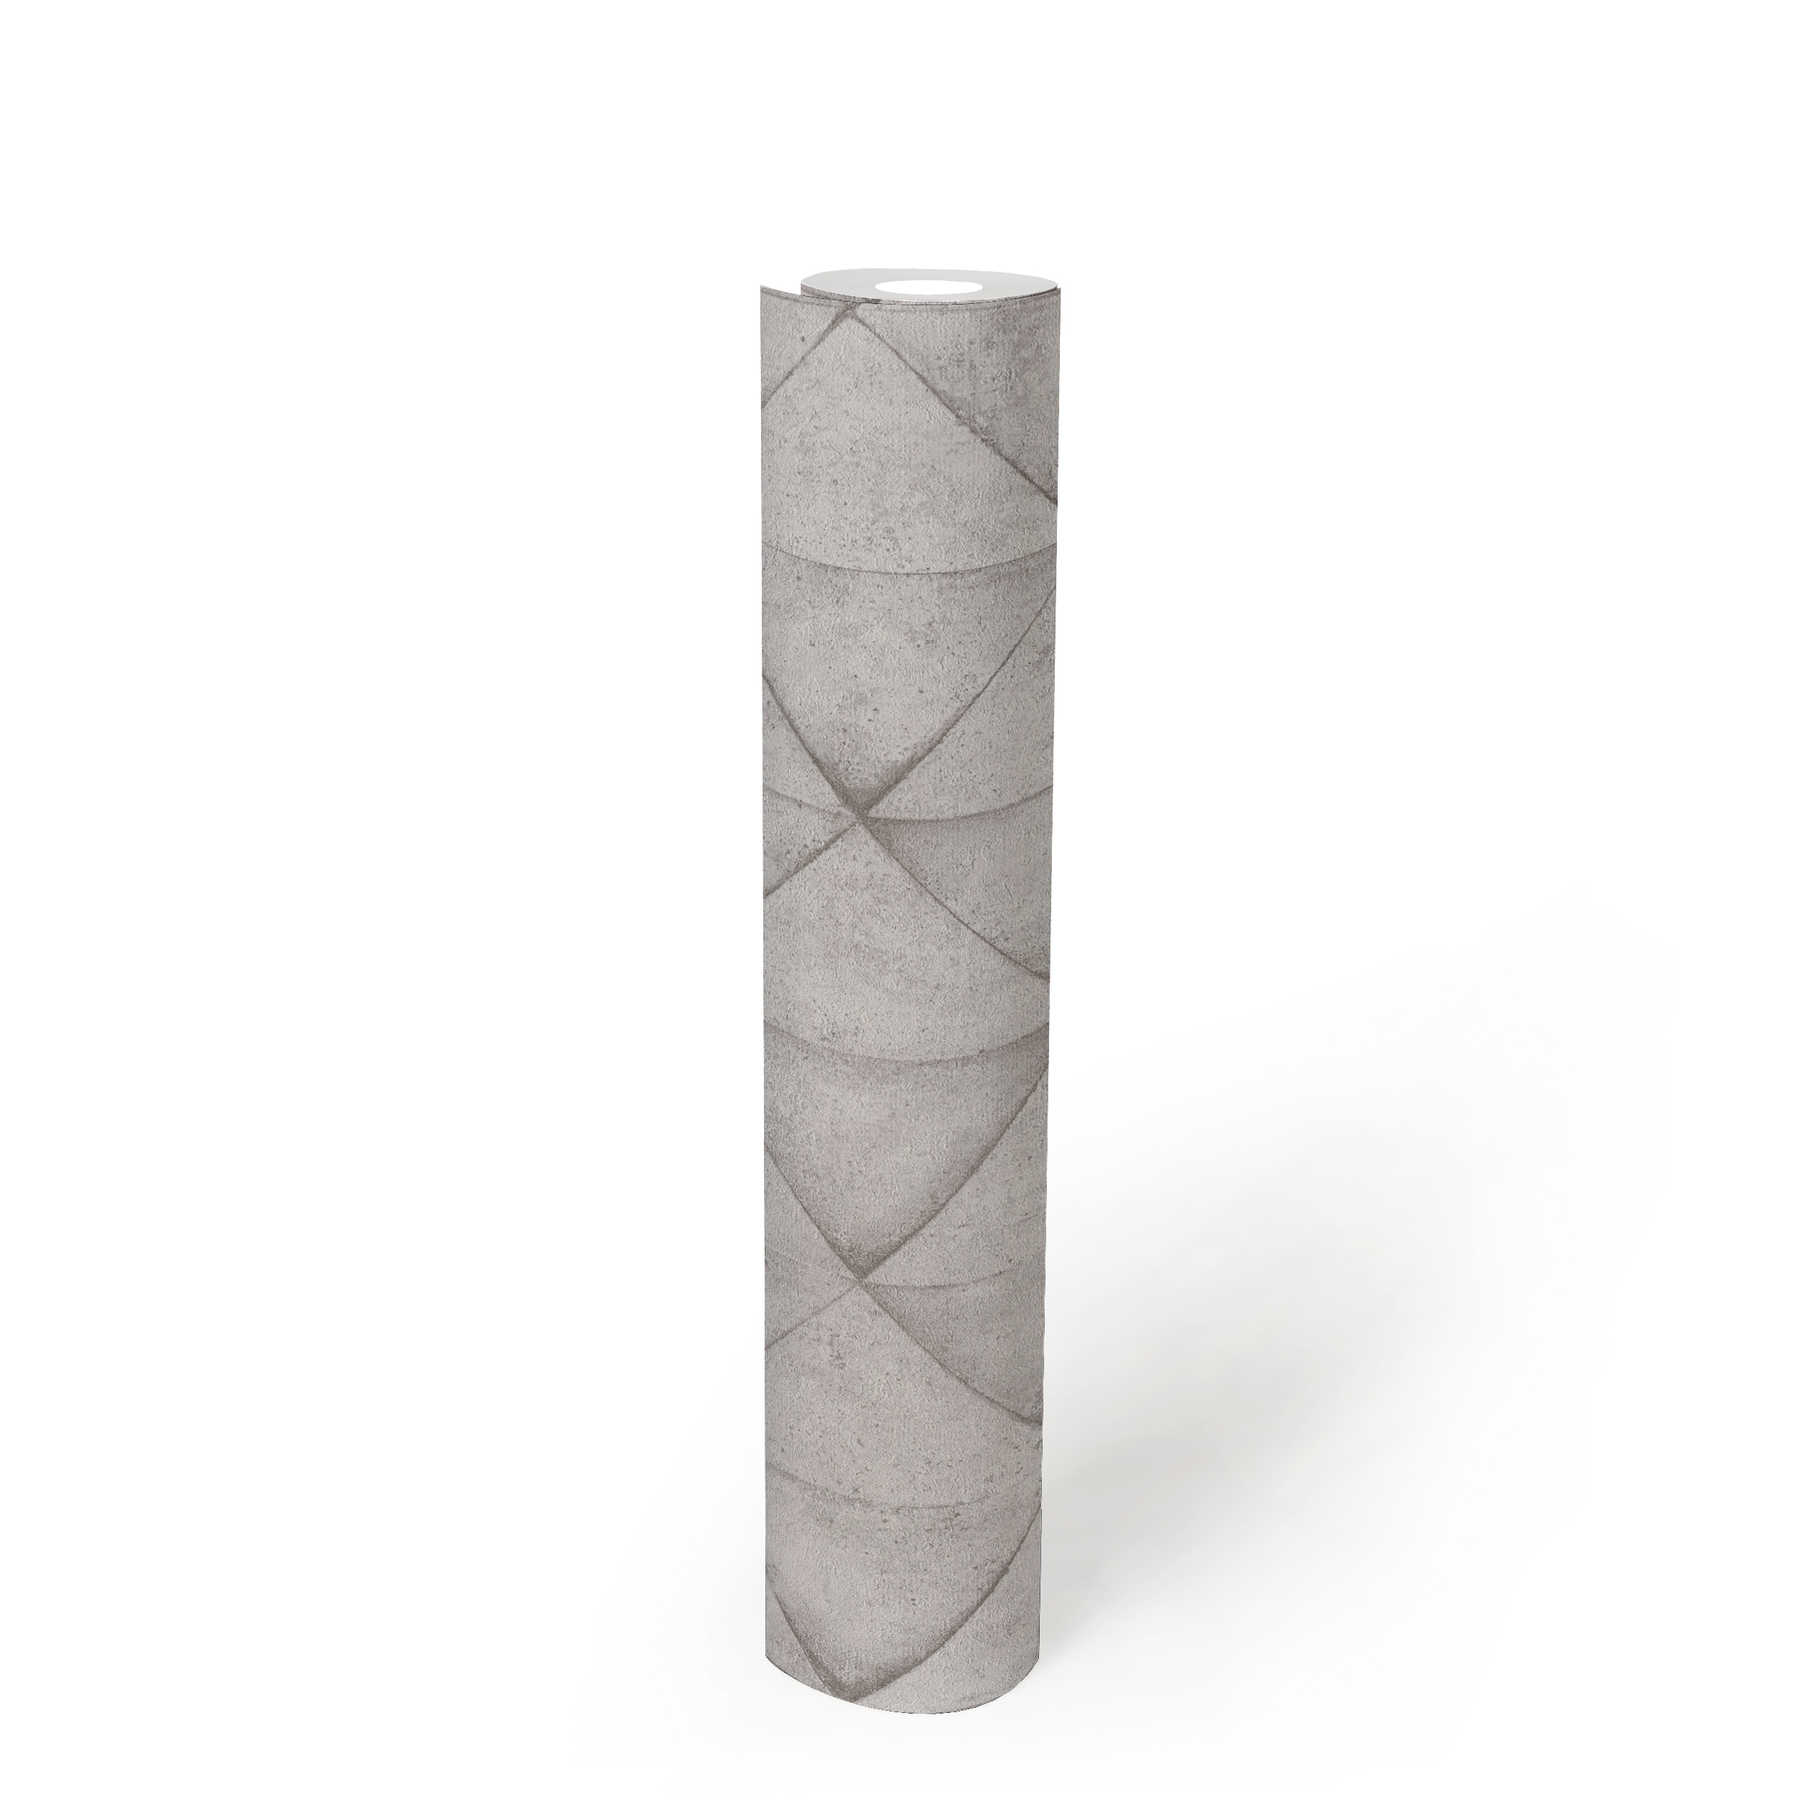             Betonoptik Tapete Kachel-Muster, 3D Used Look – Grau, Weiß
        